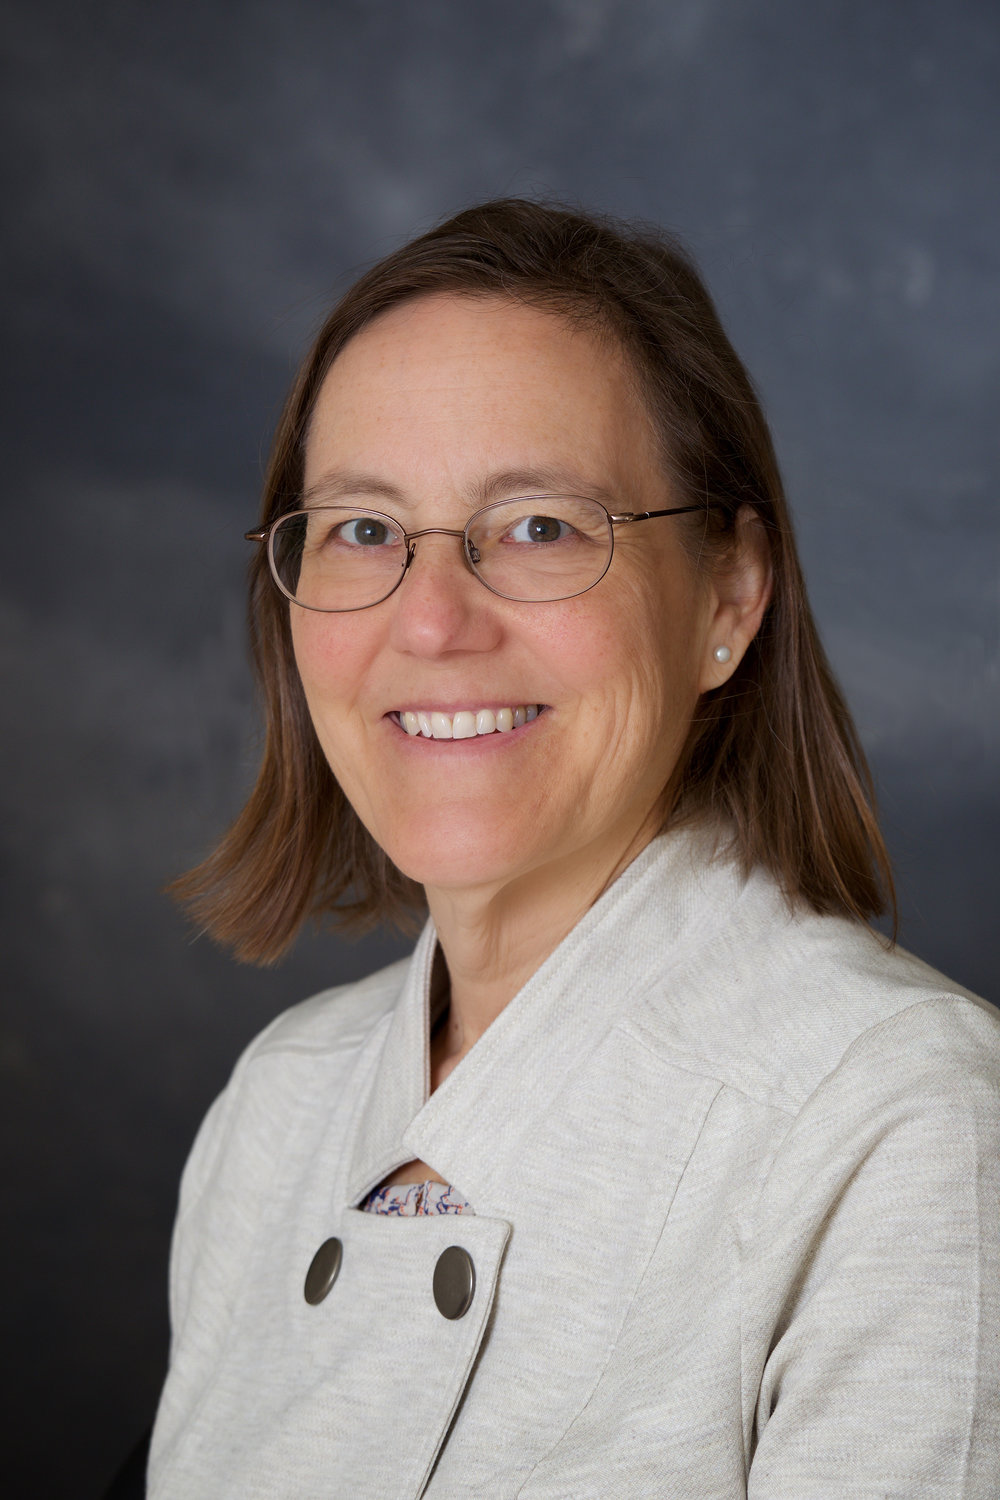 Dr. Sarah Fessler